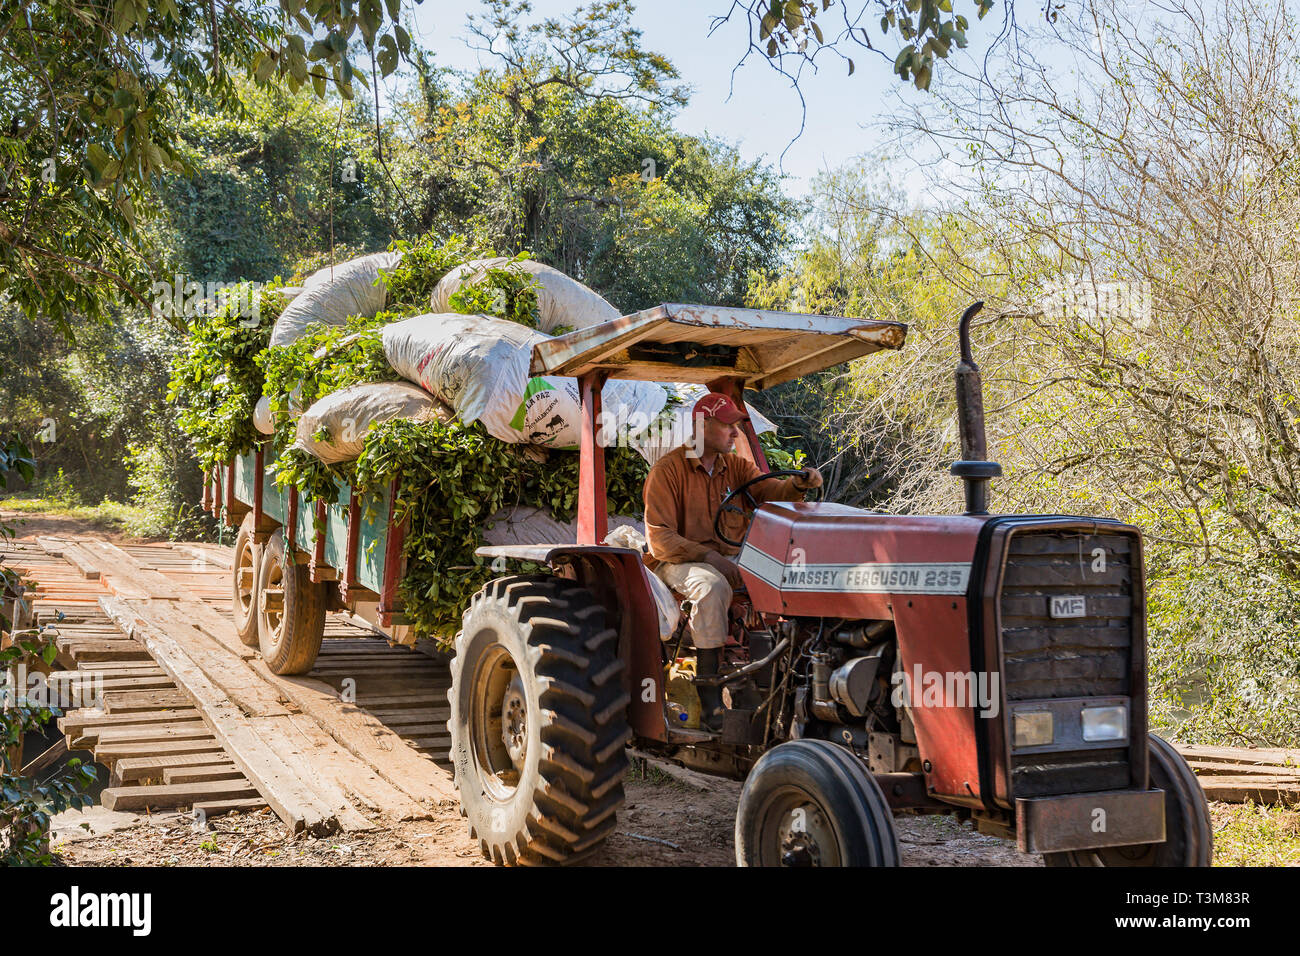 Colonia Independencia, Paraguay - Giugno 20, 2018: Contadino con trattore in Paraguay rigidi su un avvolgimento ponte di legno. Foto Stock